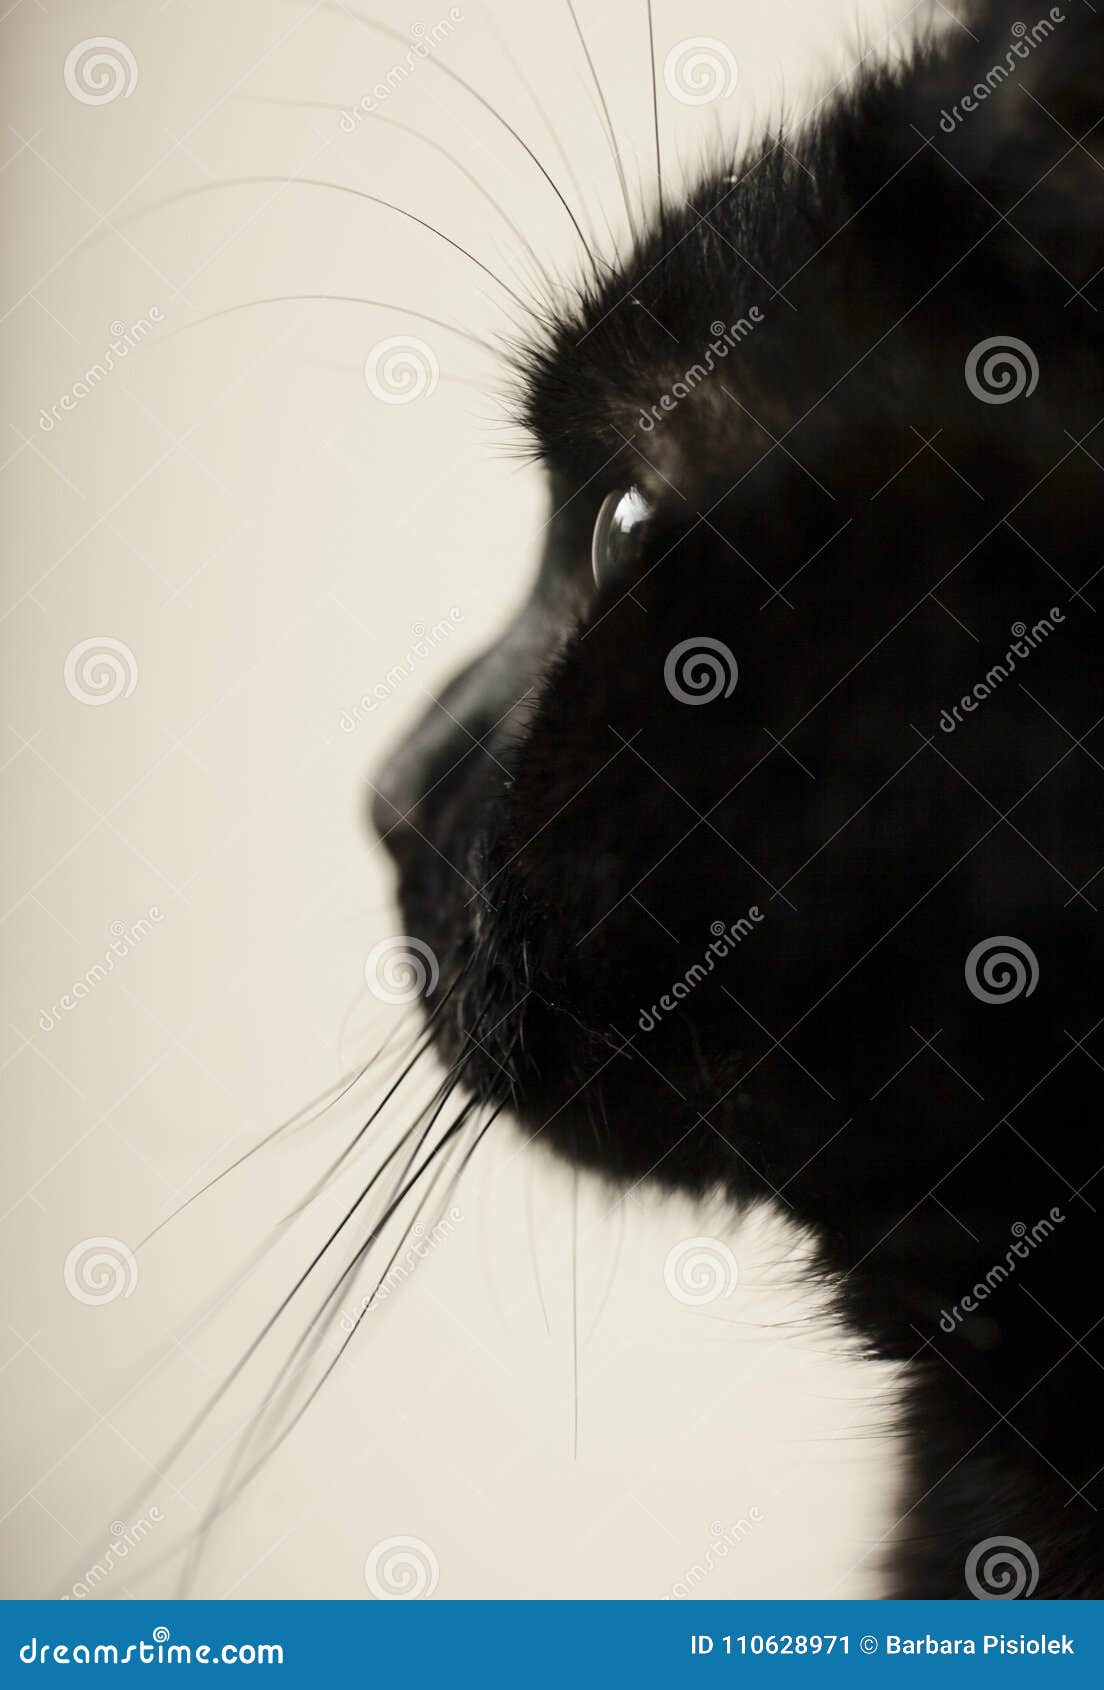 gatito, the black cat, a fluffy profile.